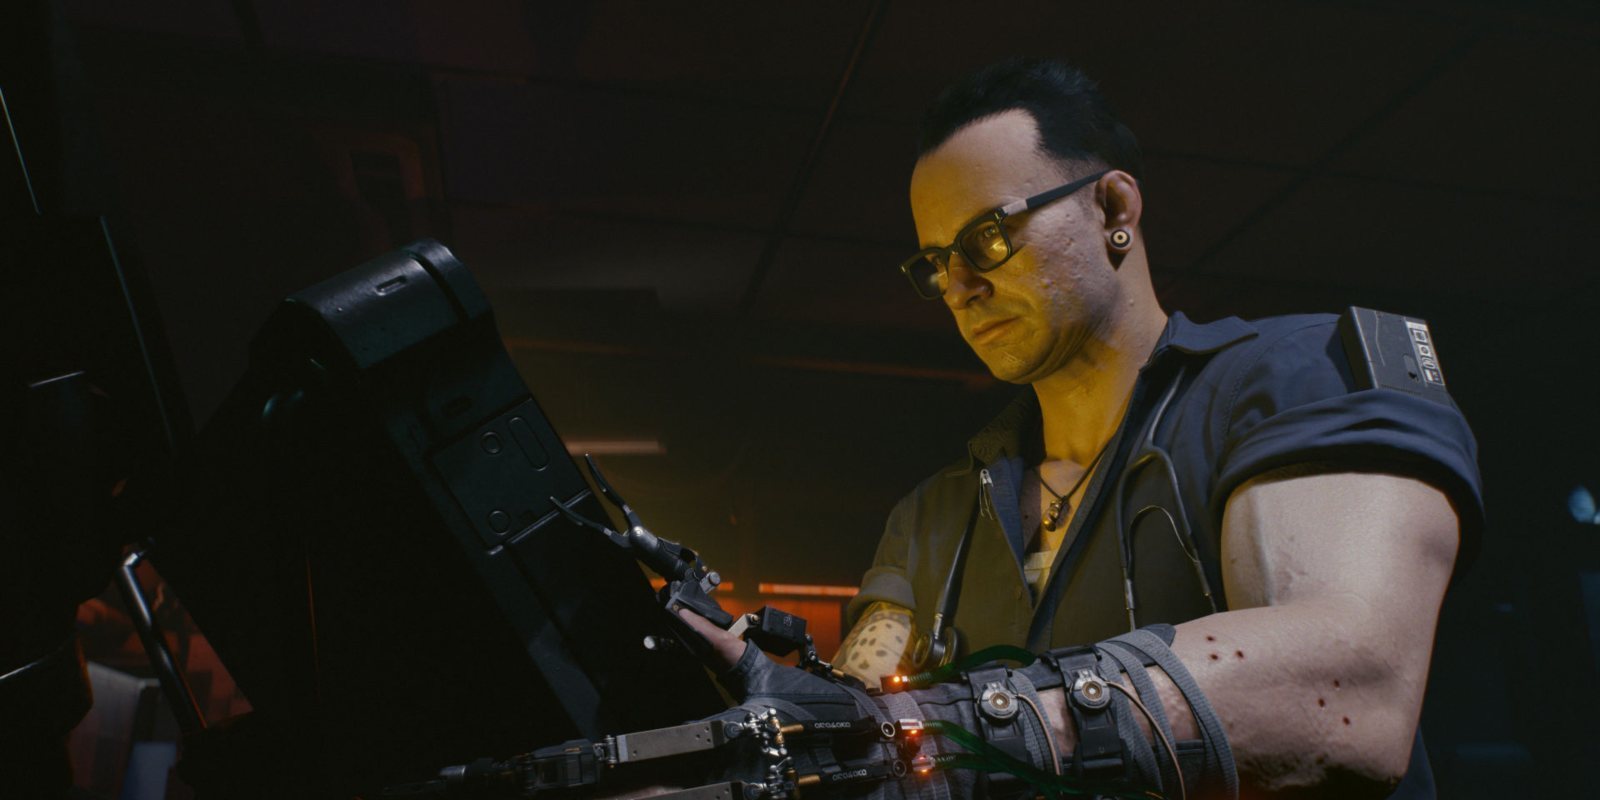 La demo de 'Cyberpunk 2077' en el E3 funcionaba en este equipo